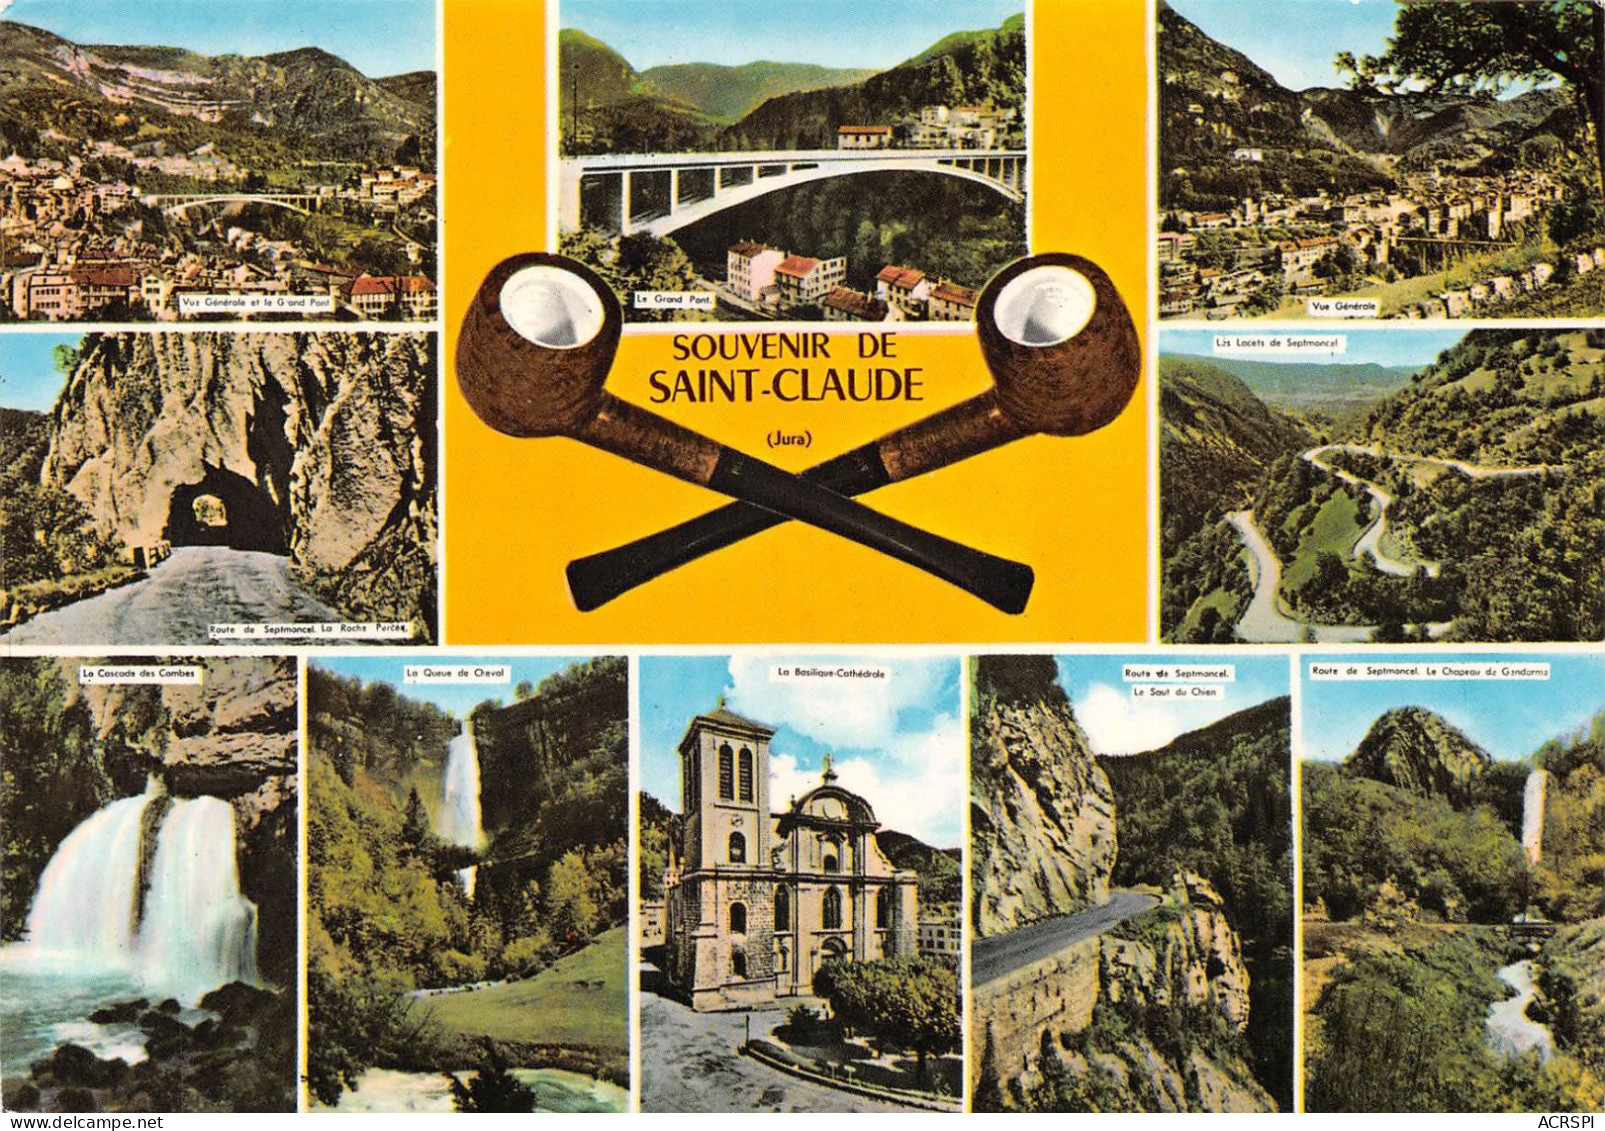 39 SAINT-CLAUDE Multivue Souvenir (Scan R/V) N° 18 \MS9019 - Saint Claude